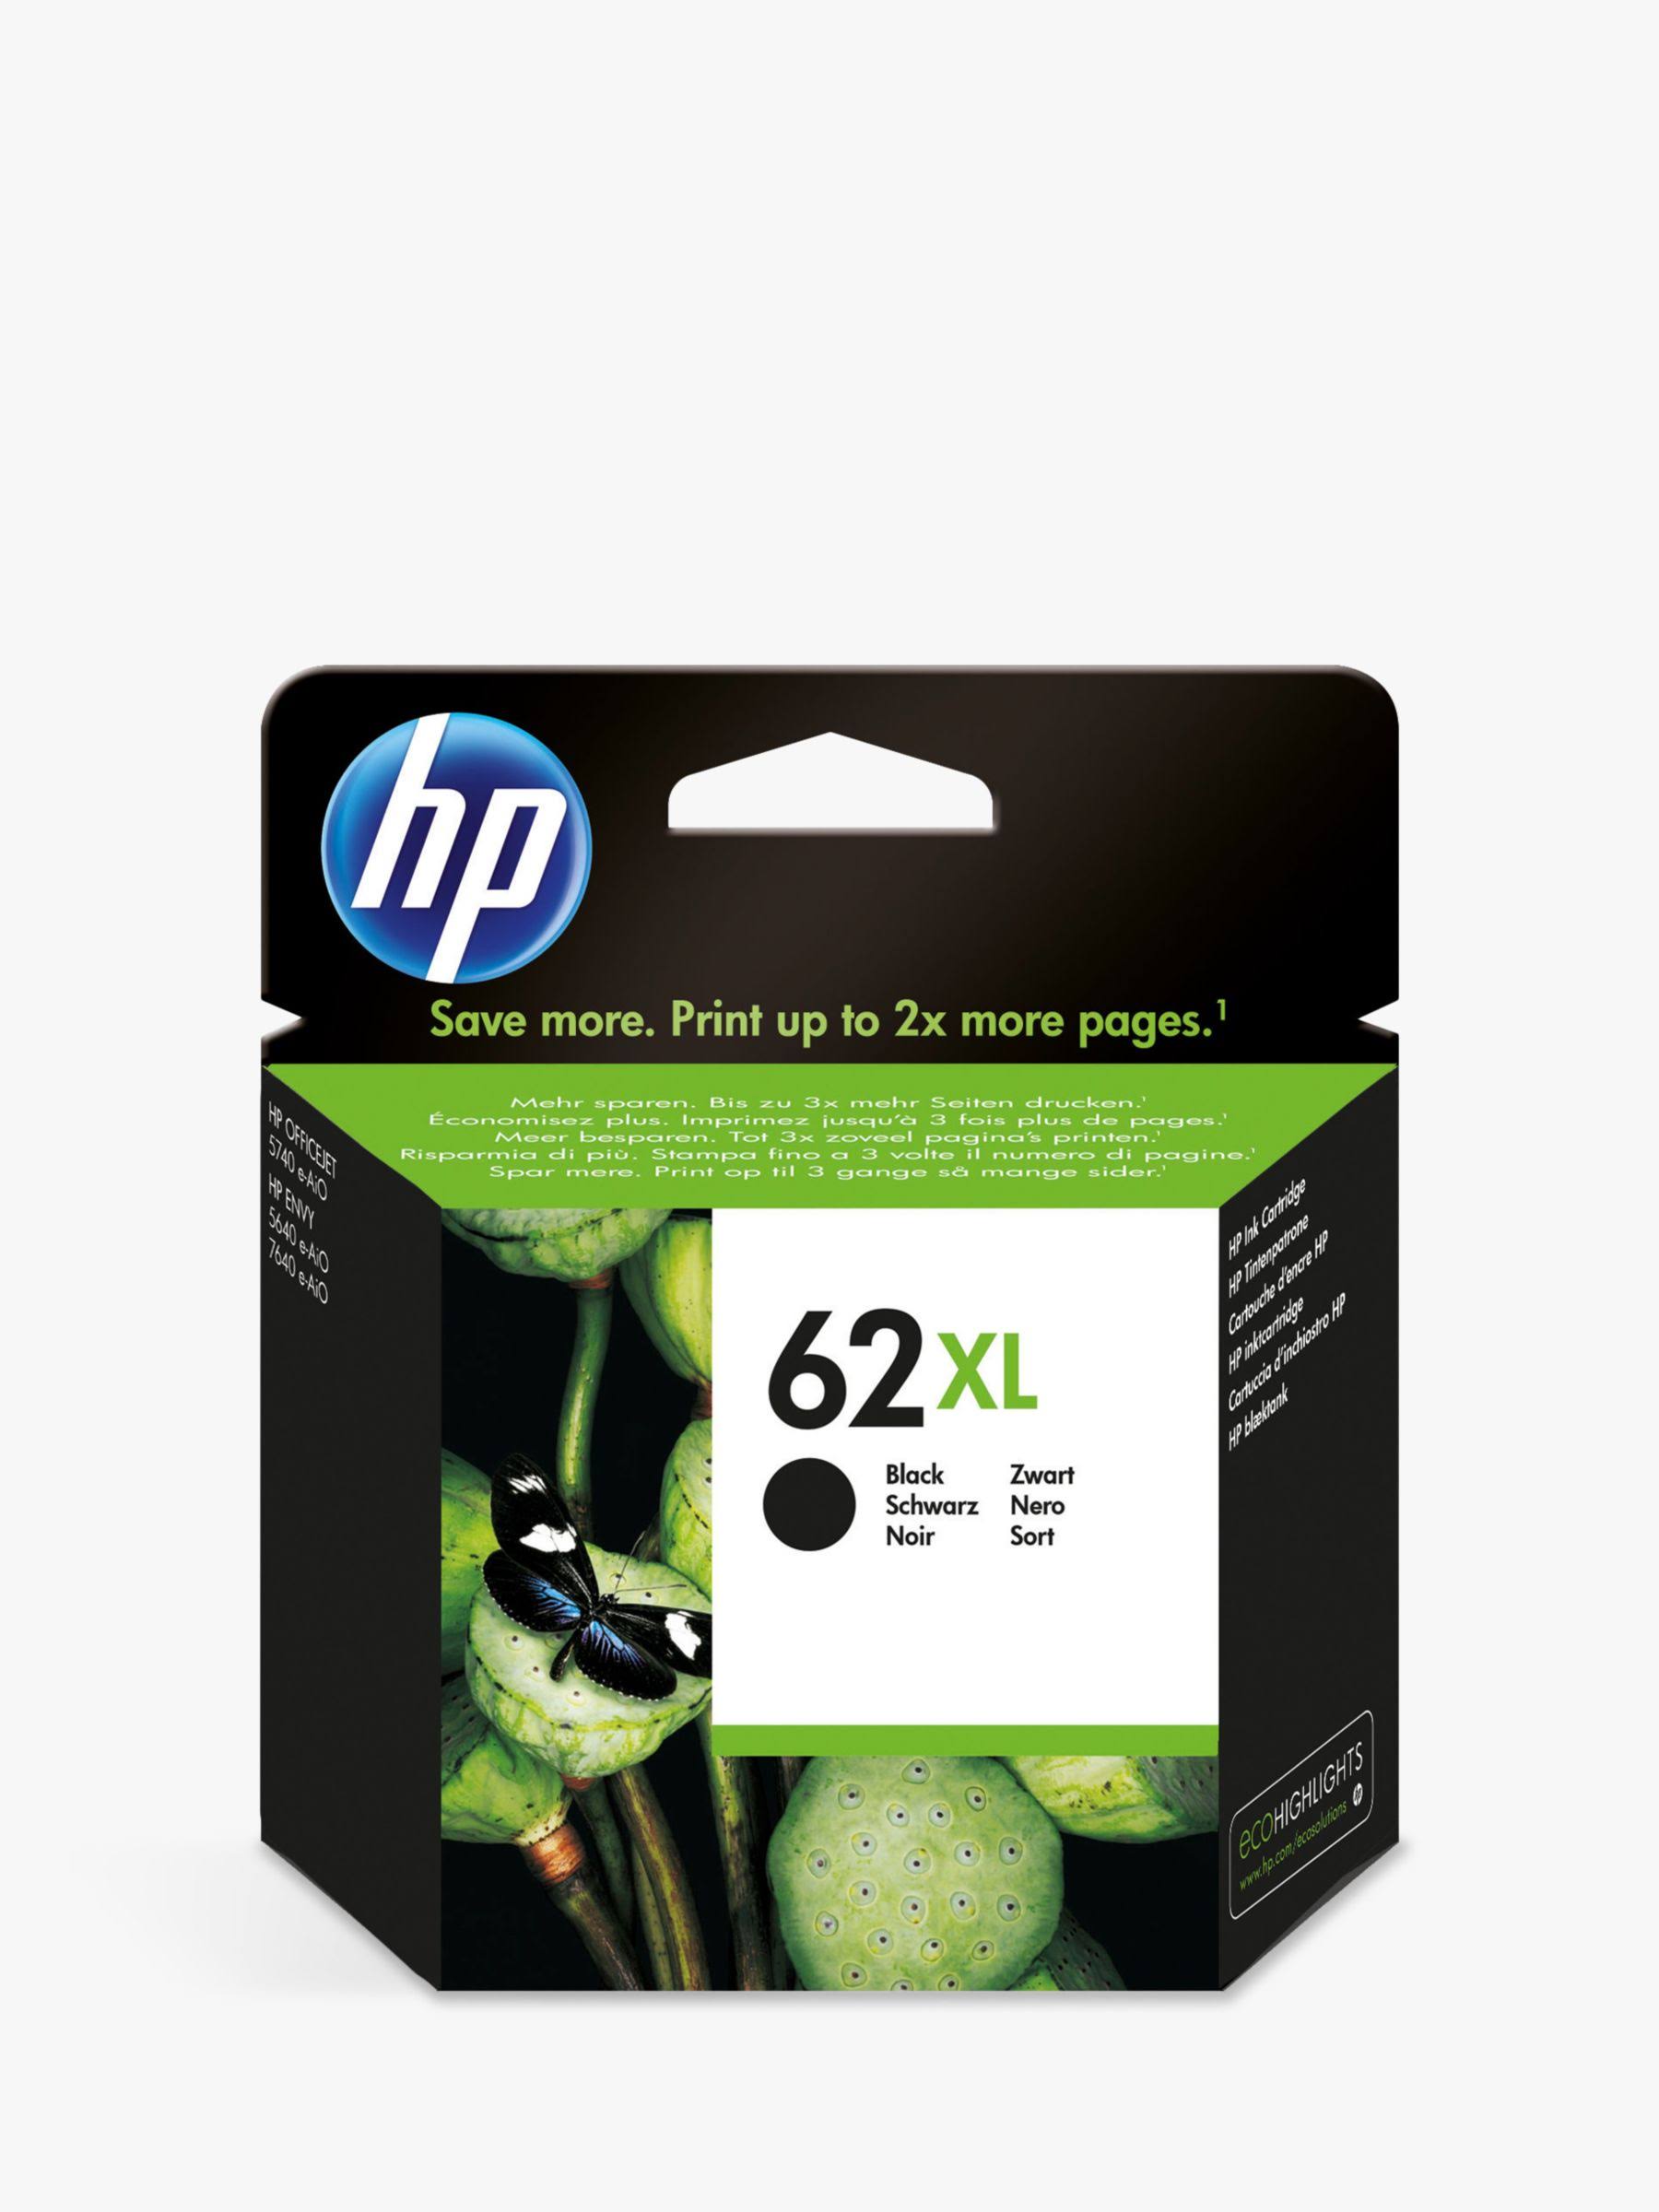 HP 62XL Ink Cartridge - Black